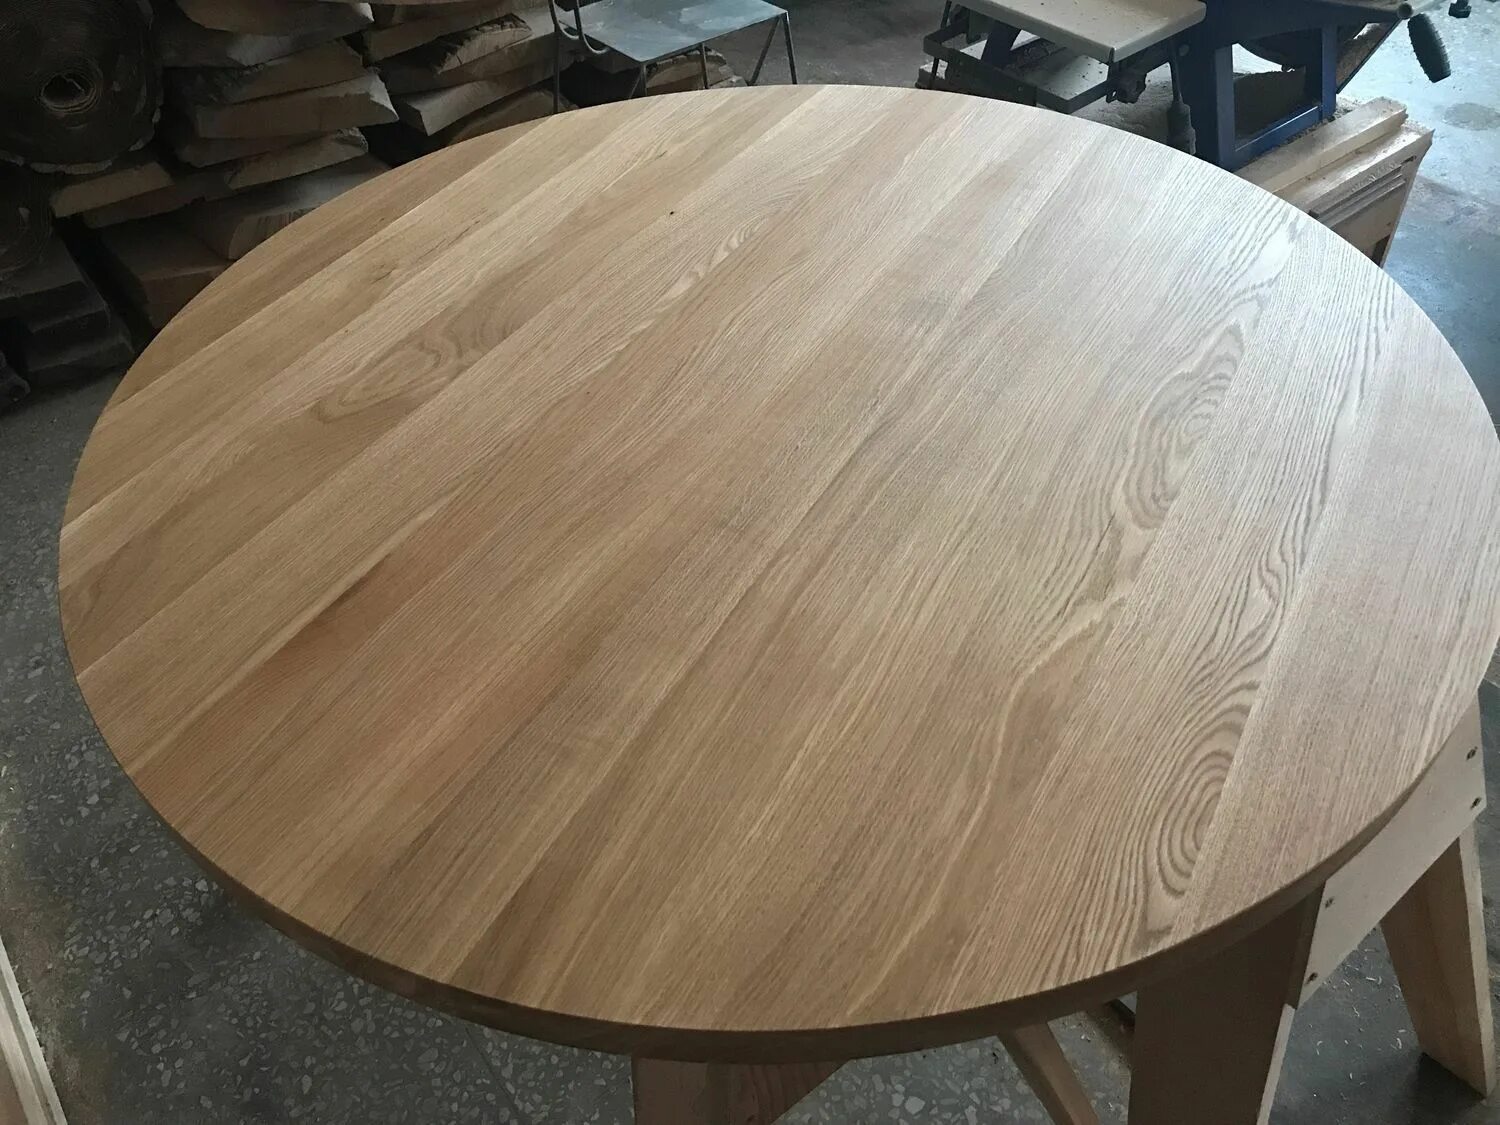 Купить круглый в омске. Круглый деревянный стол. Круглый дубовый стол. Большой деревянный круглый стол. Стол круглый шпон дуба.